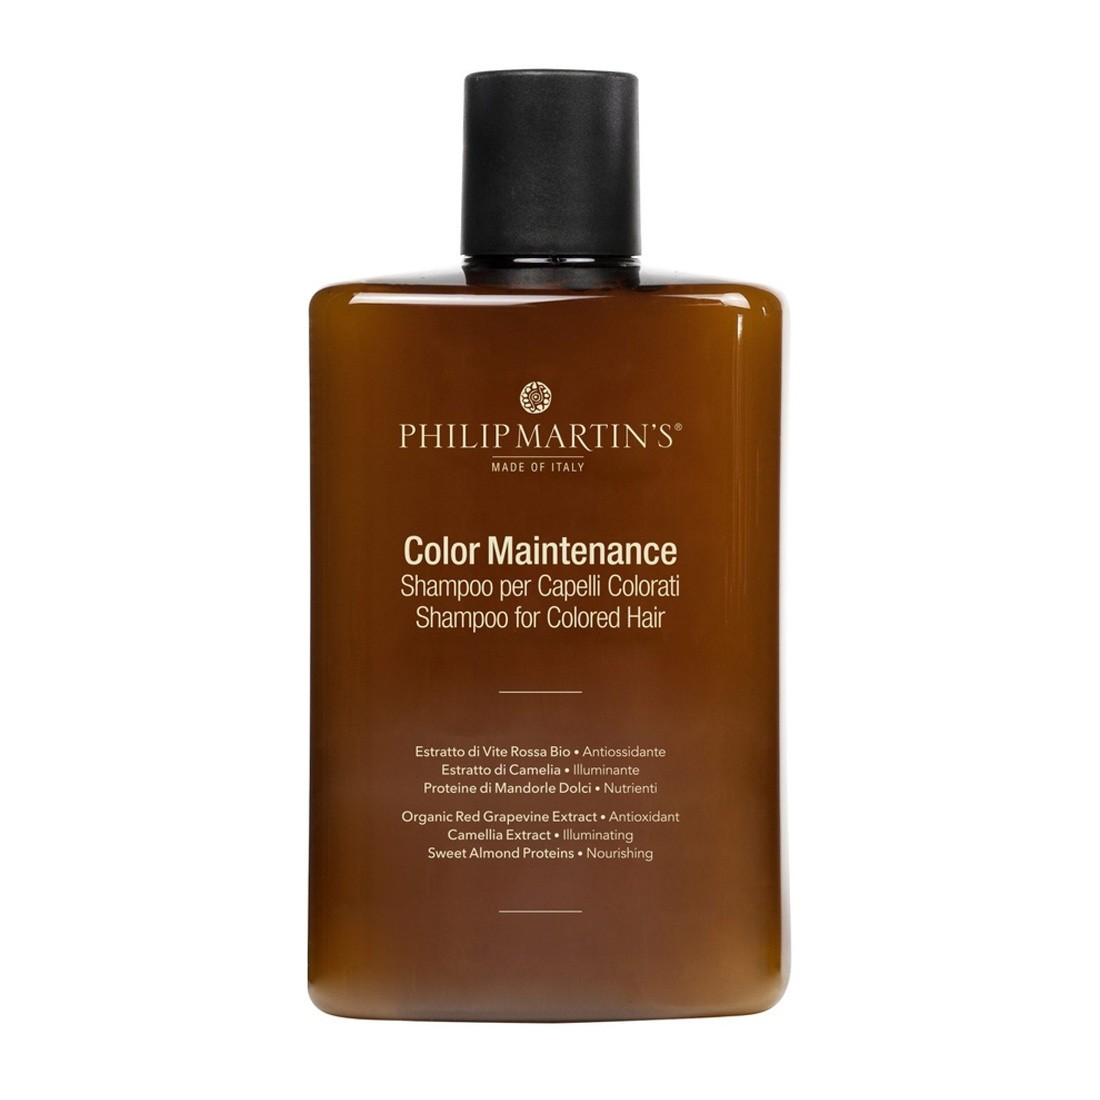 Шампунь для окрашенных и химически поврежденных волос Colour Maintenance Philip Martin’s 320 мл — фото №1